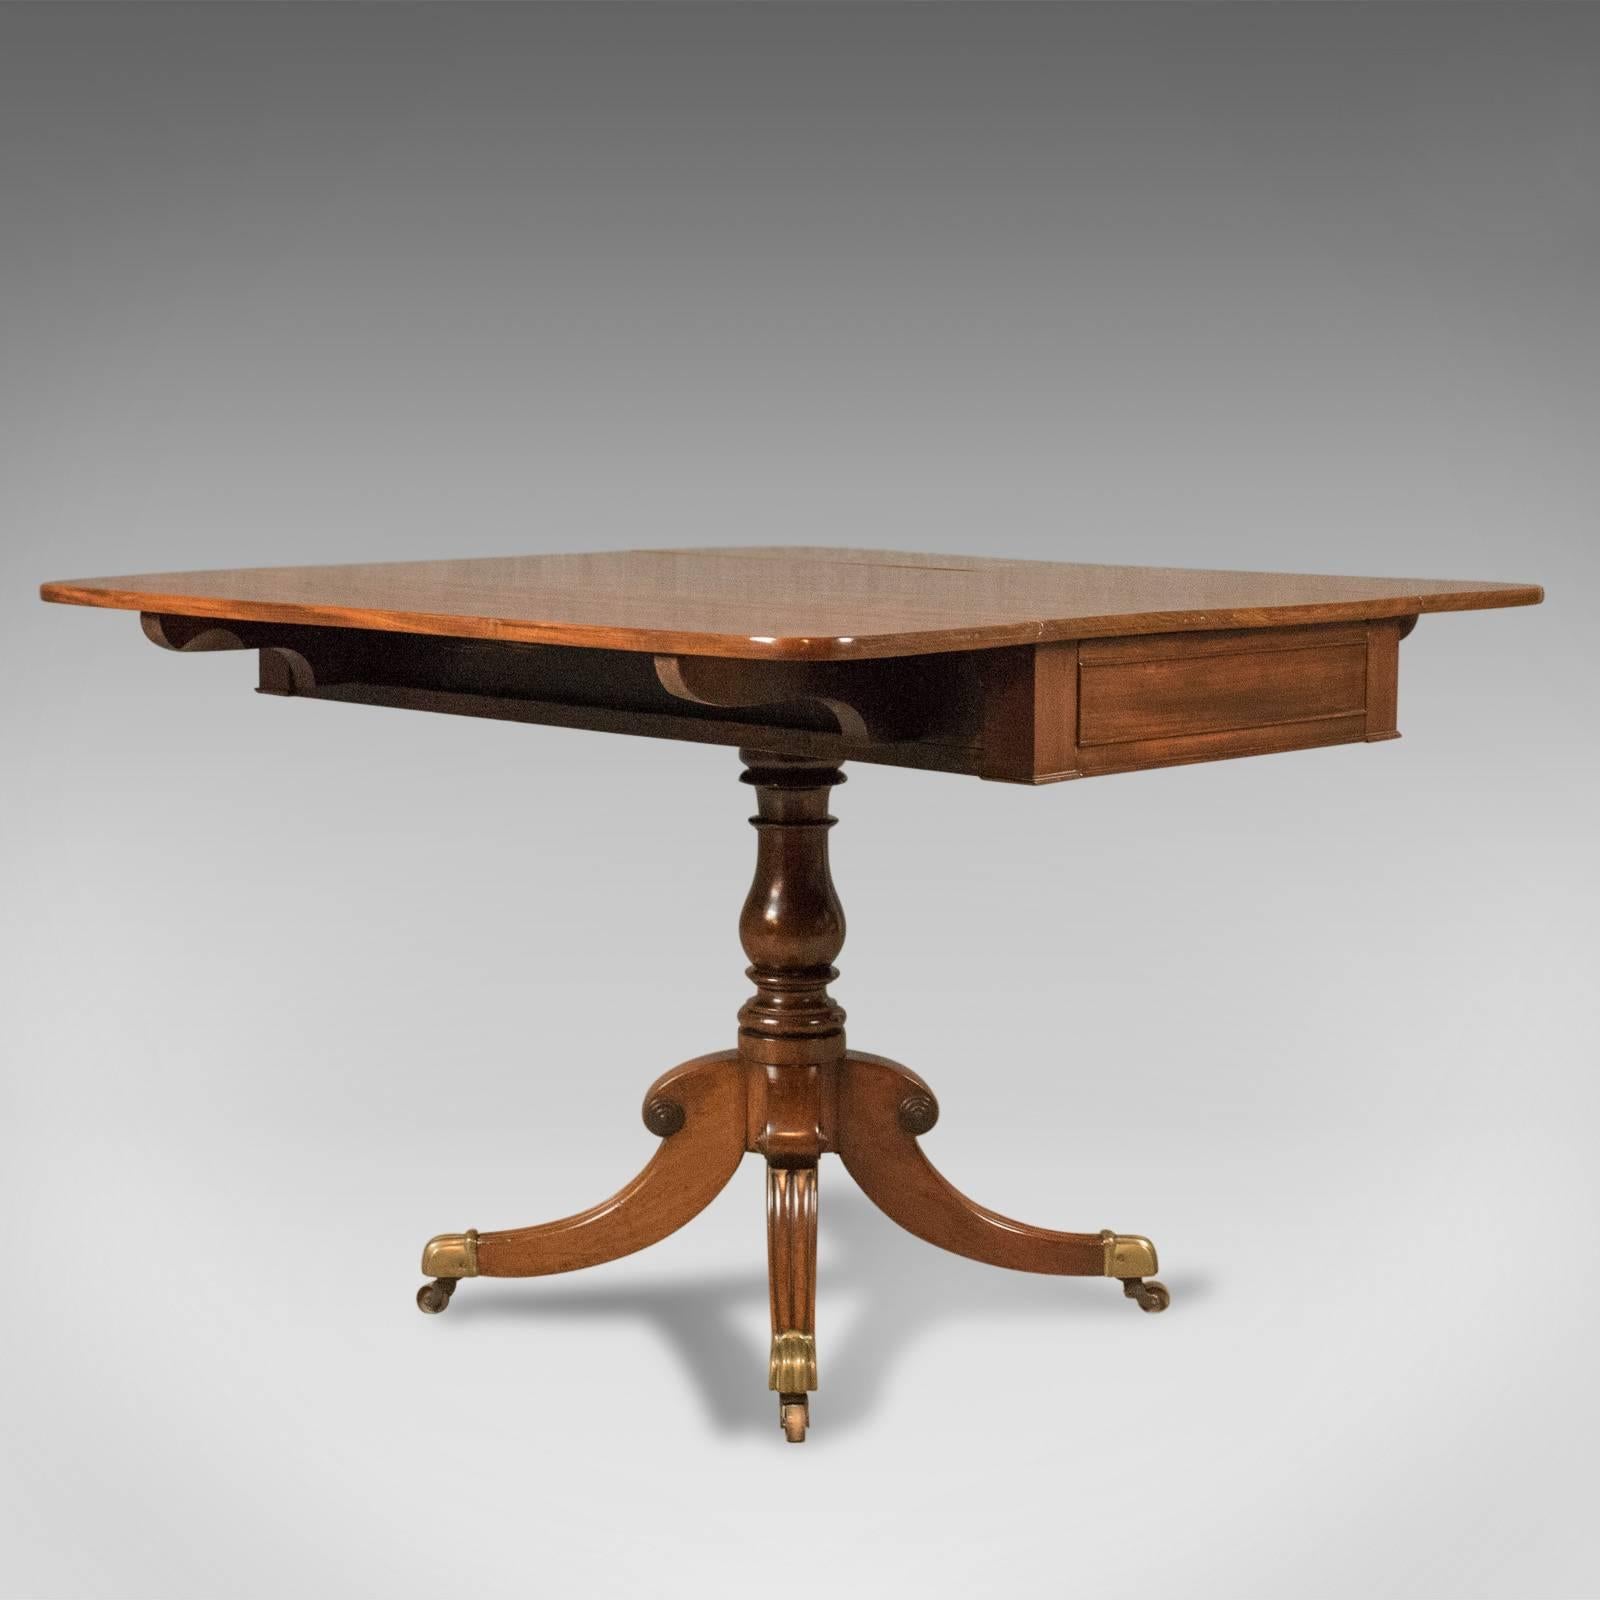 Il s'agit d'une table Pembroke ancienne de qualité supérieure, anglaise, de la période Régence en acajou flammé, vers 1820.

Table d'harmonie en acajou massif de première qualité
Il présente un intérêt pour le grain, une bonne couleur et une